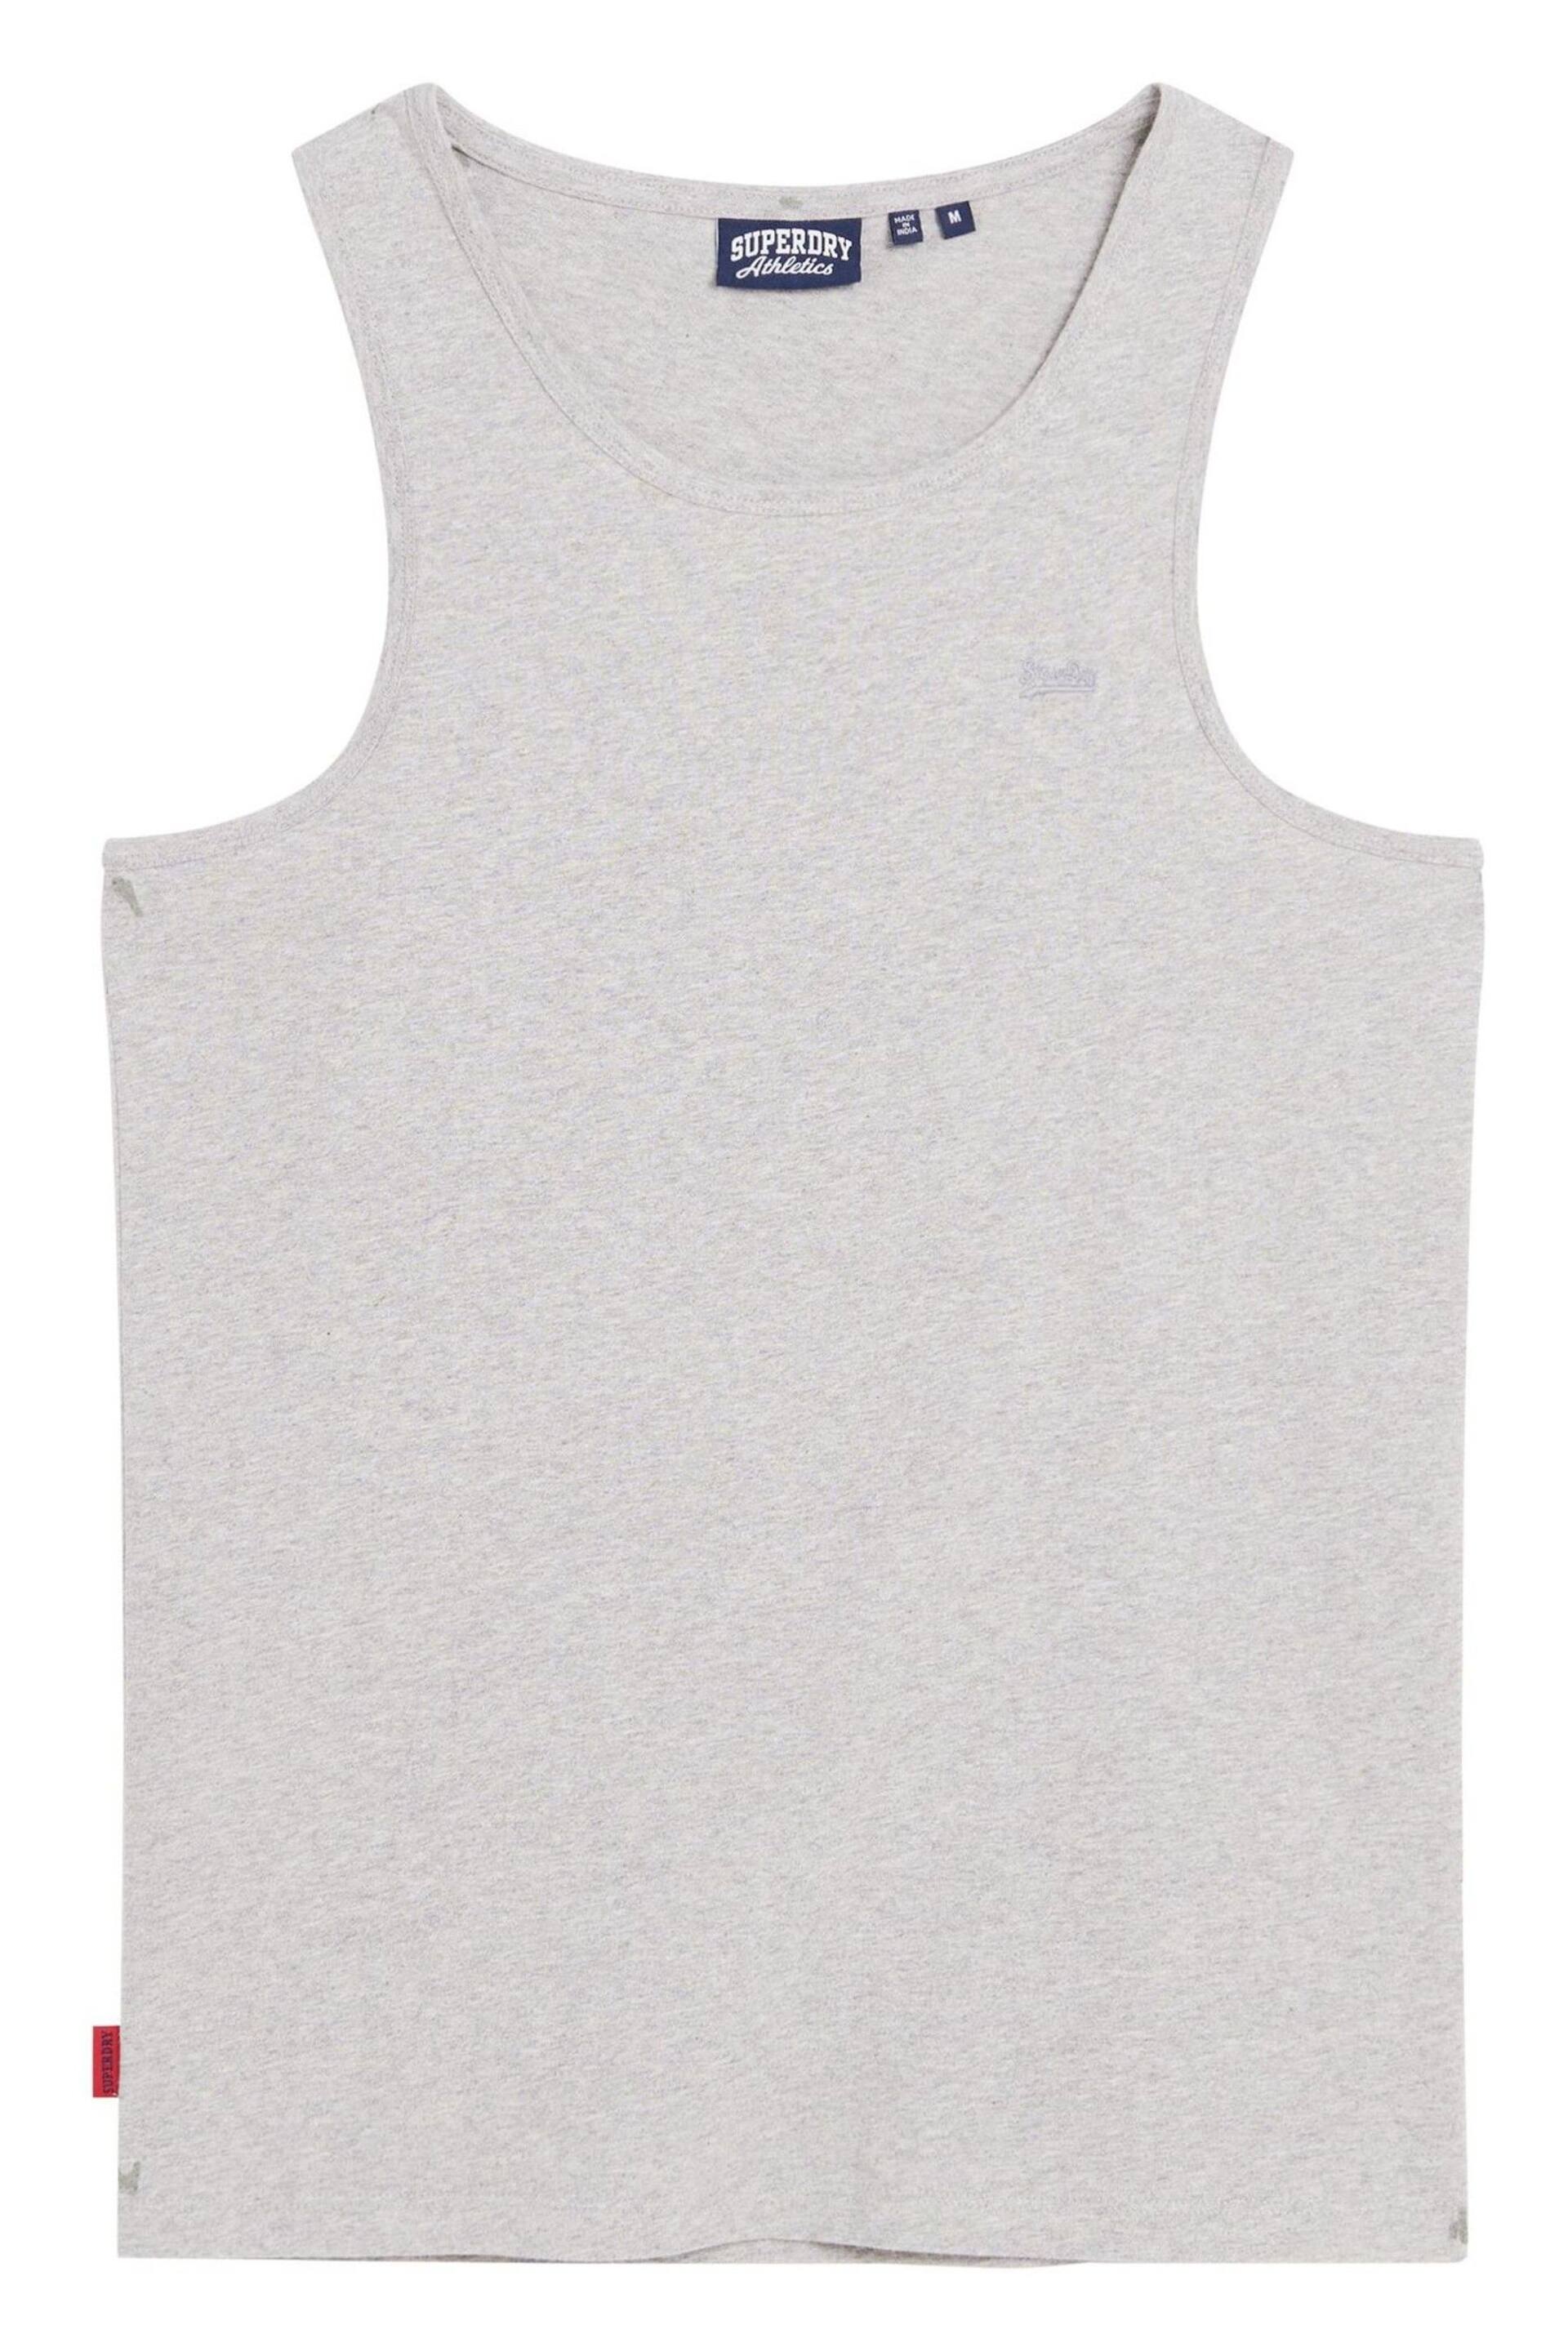 Superdry Grey Essential Logo Vest - Image 4 of 4